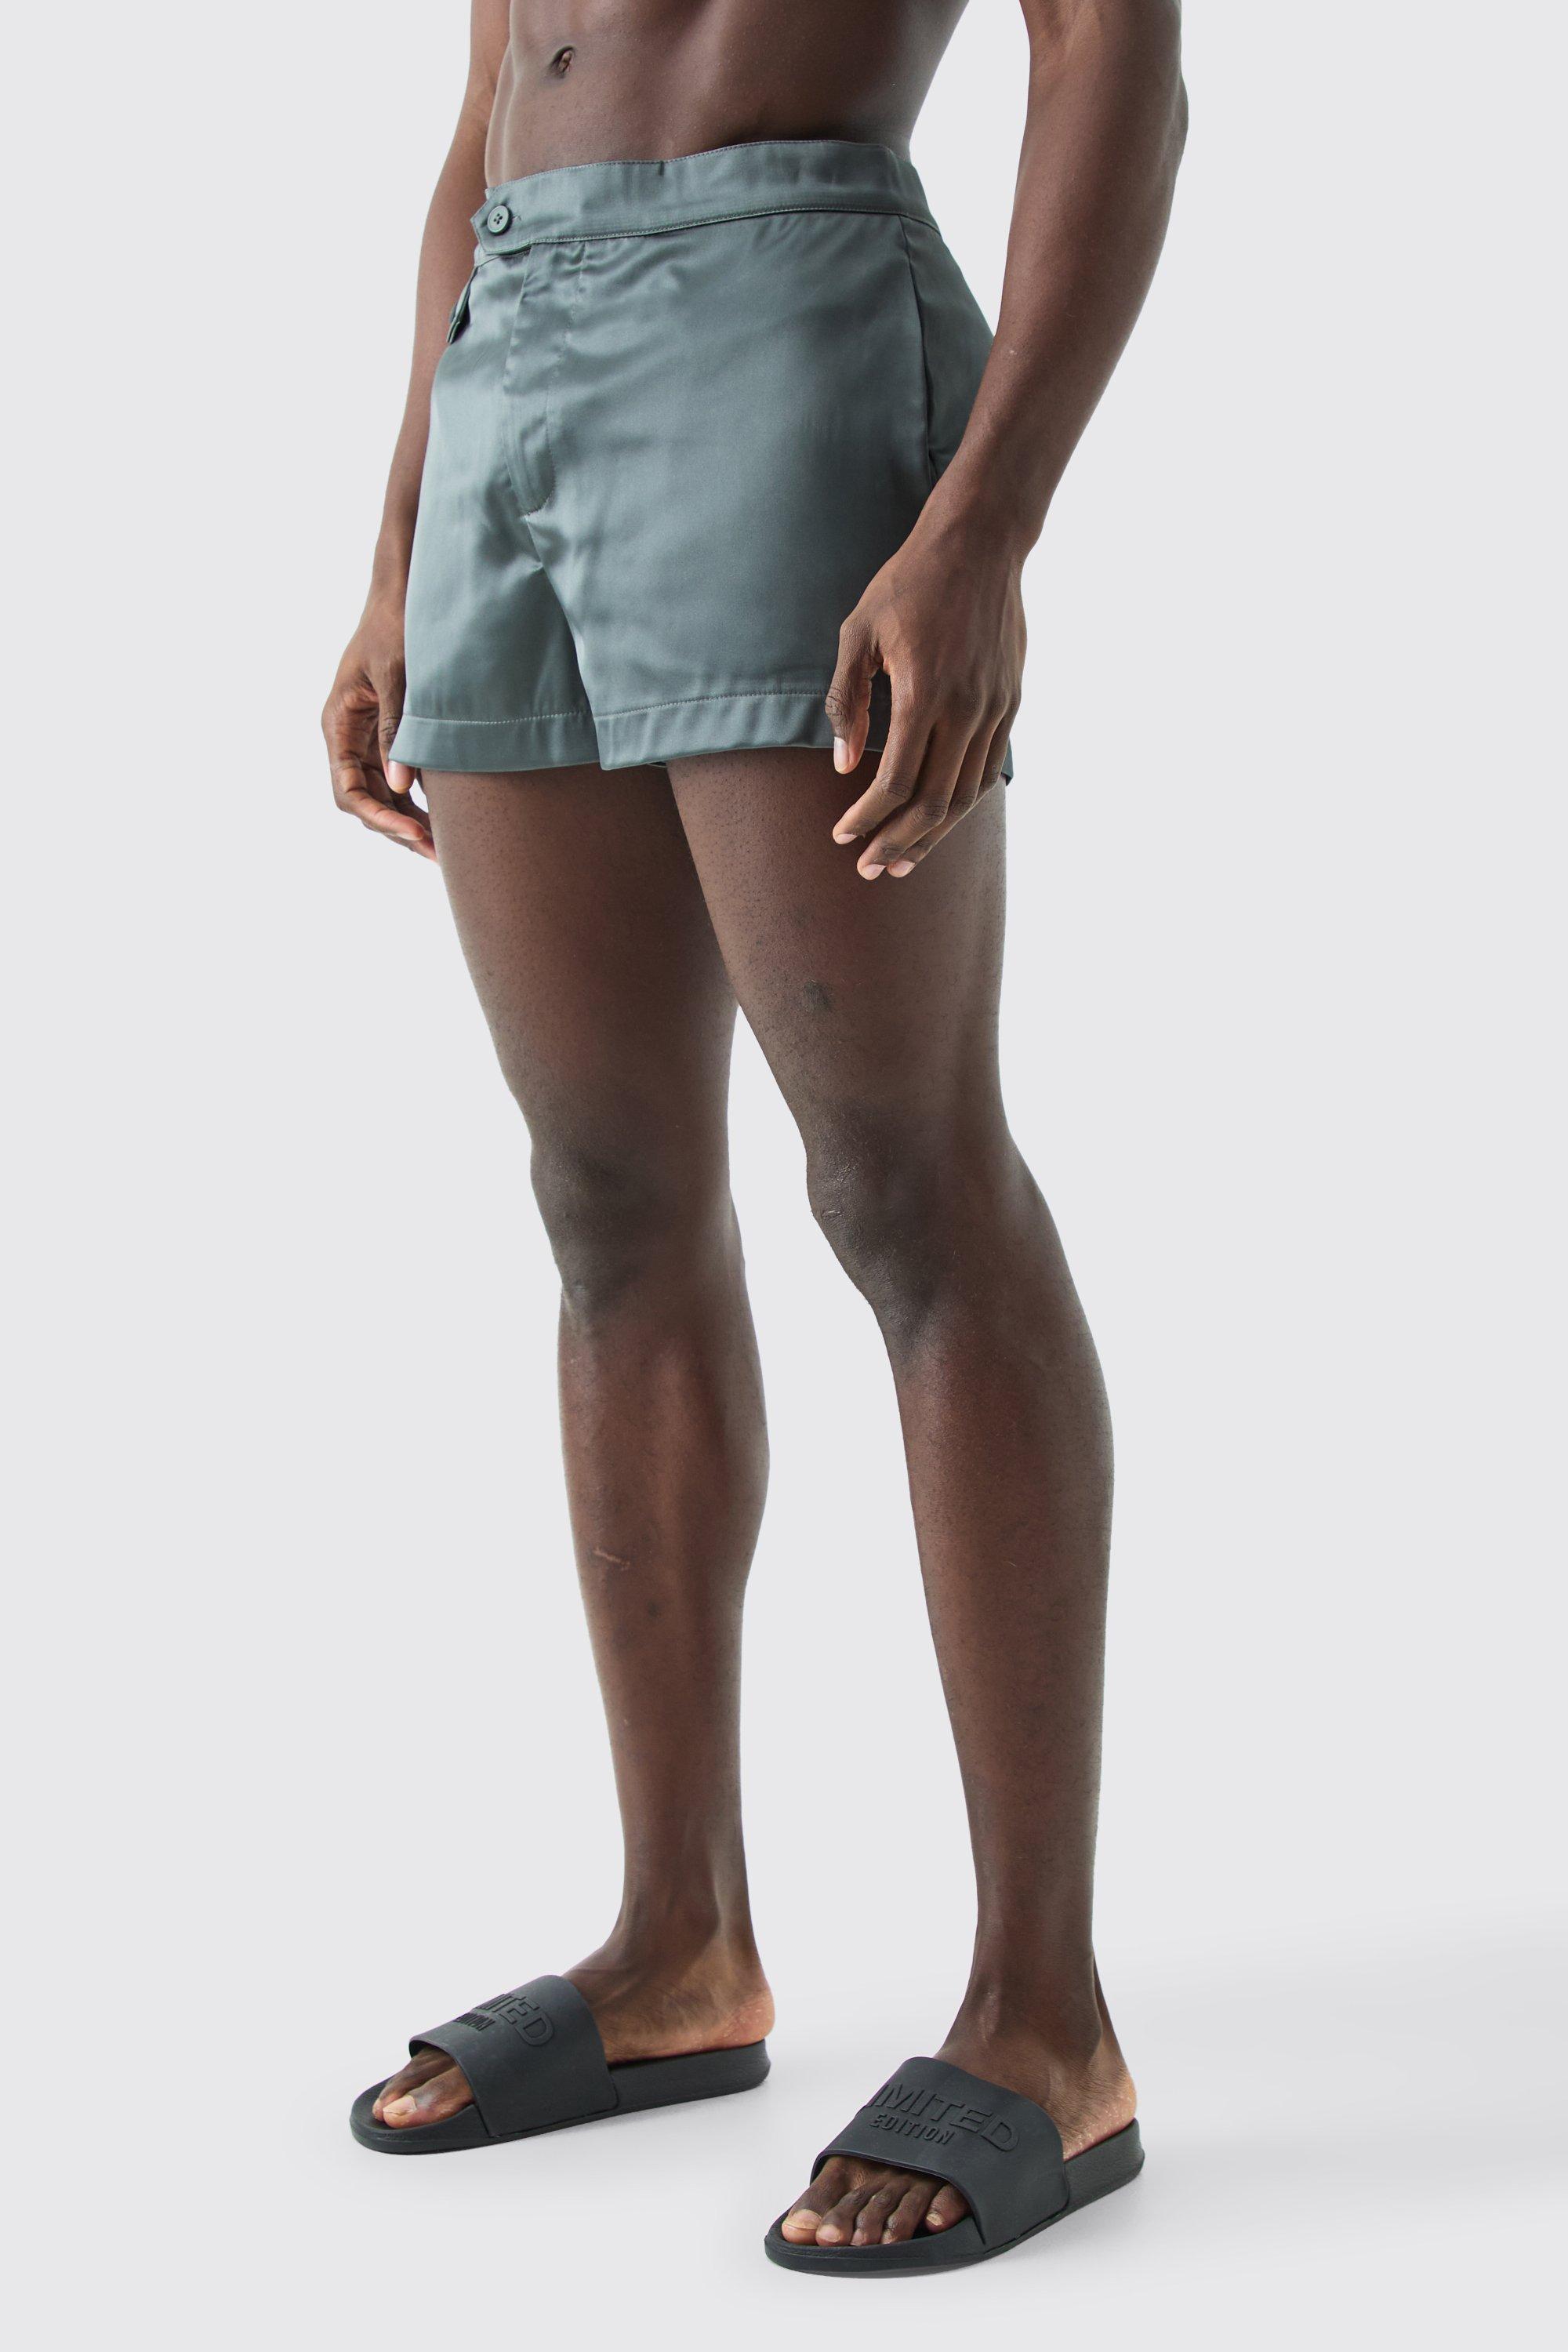 Image of Pantaloncini da bagno Smart super corto con tasche in vita fissa, Verde